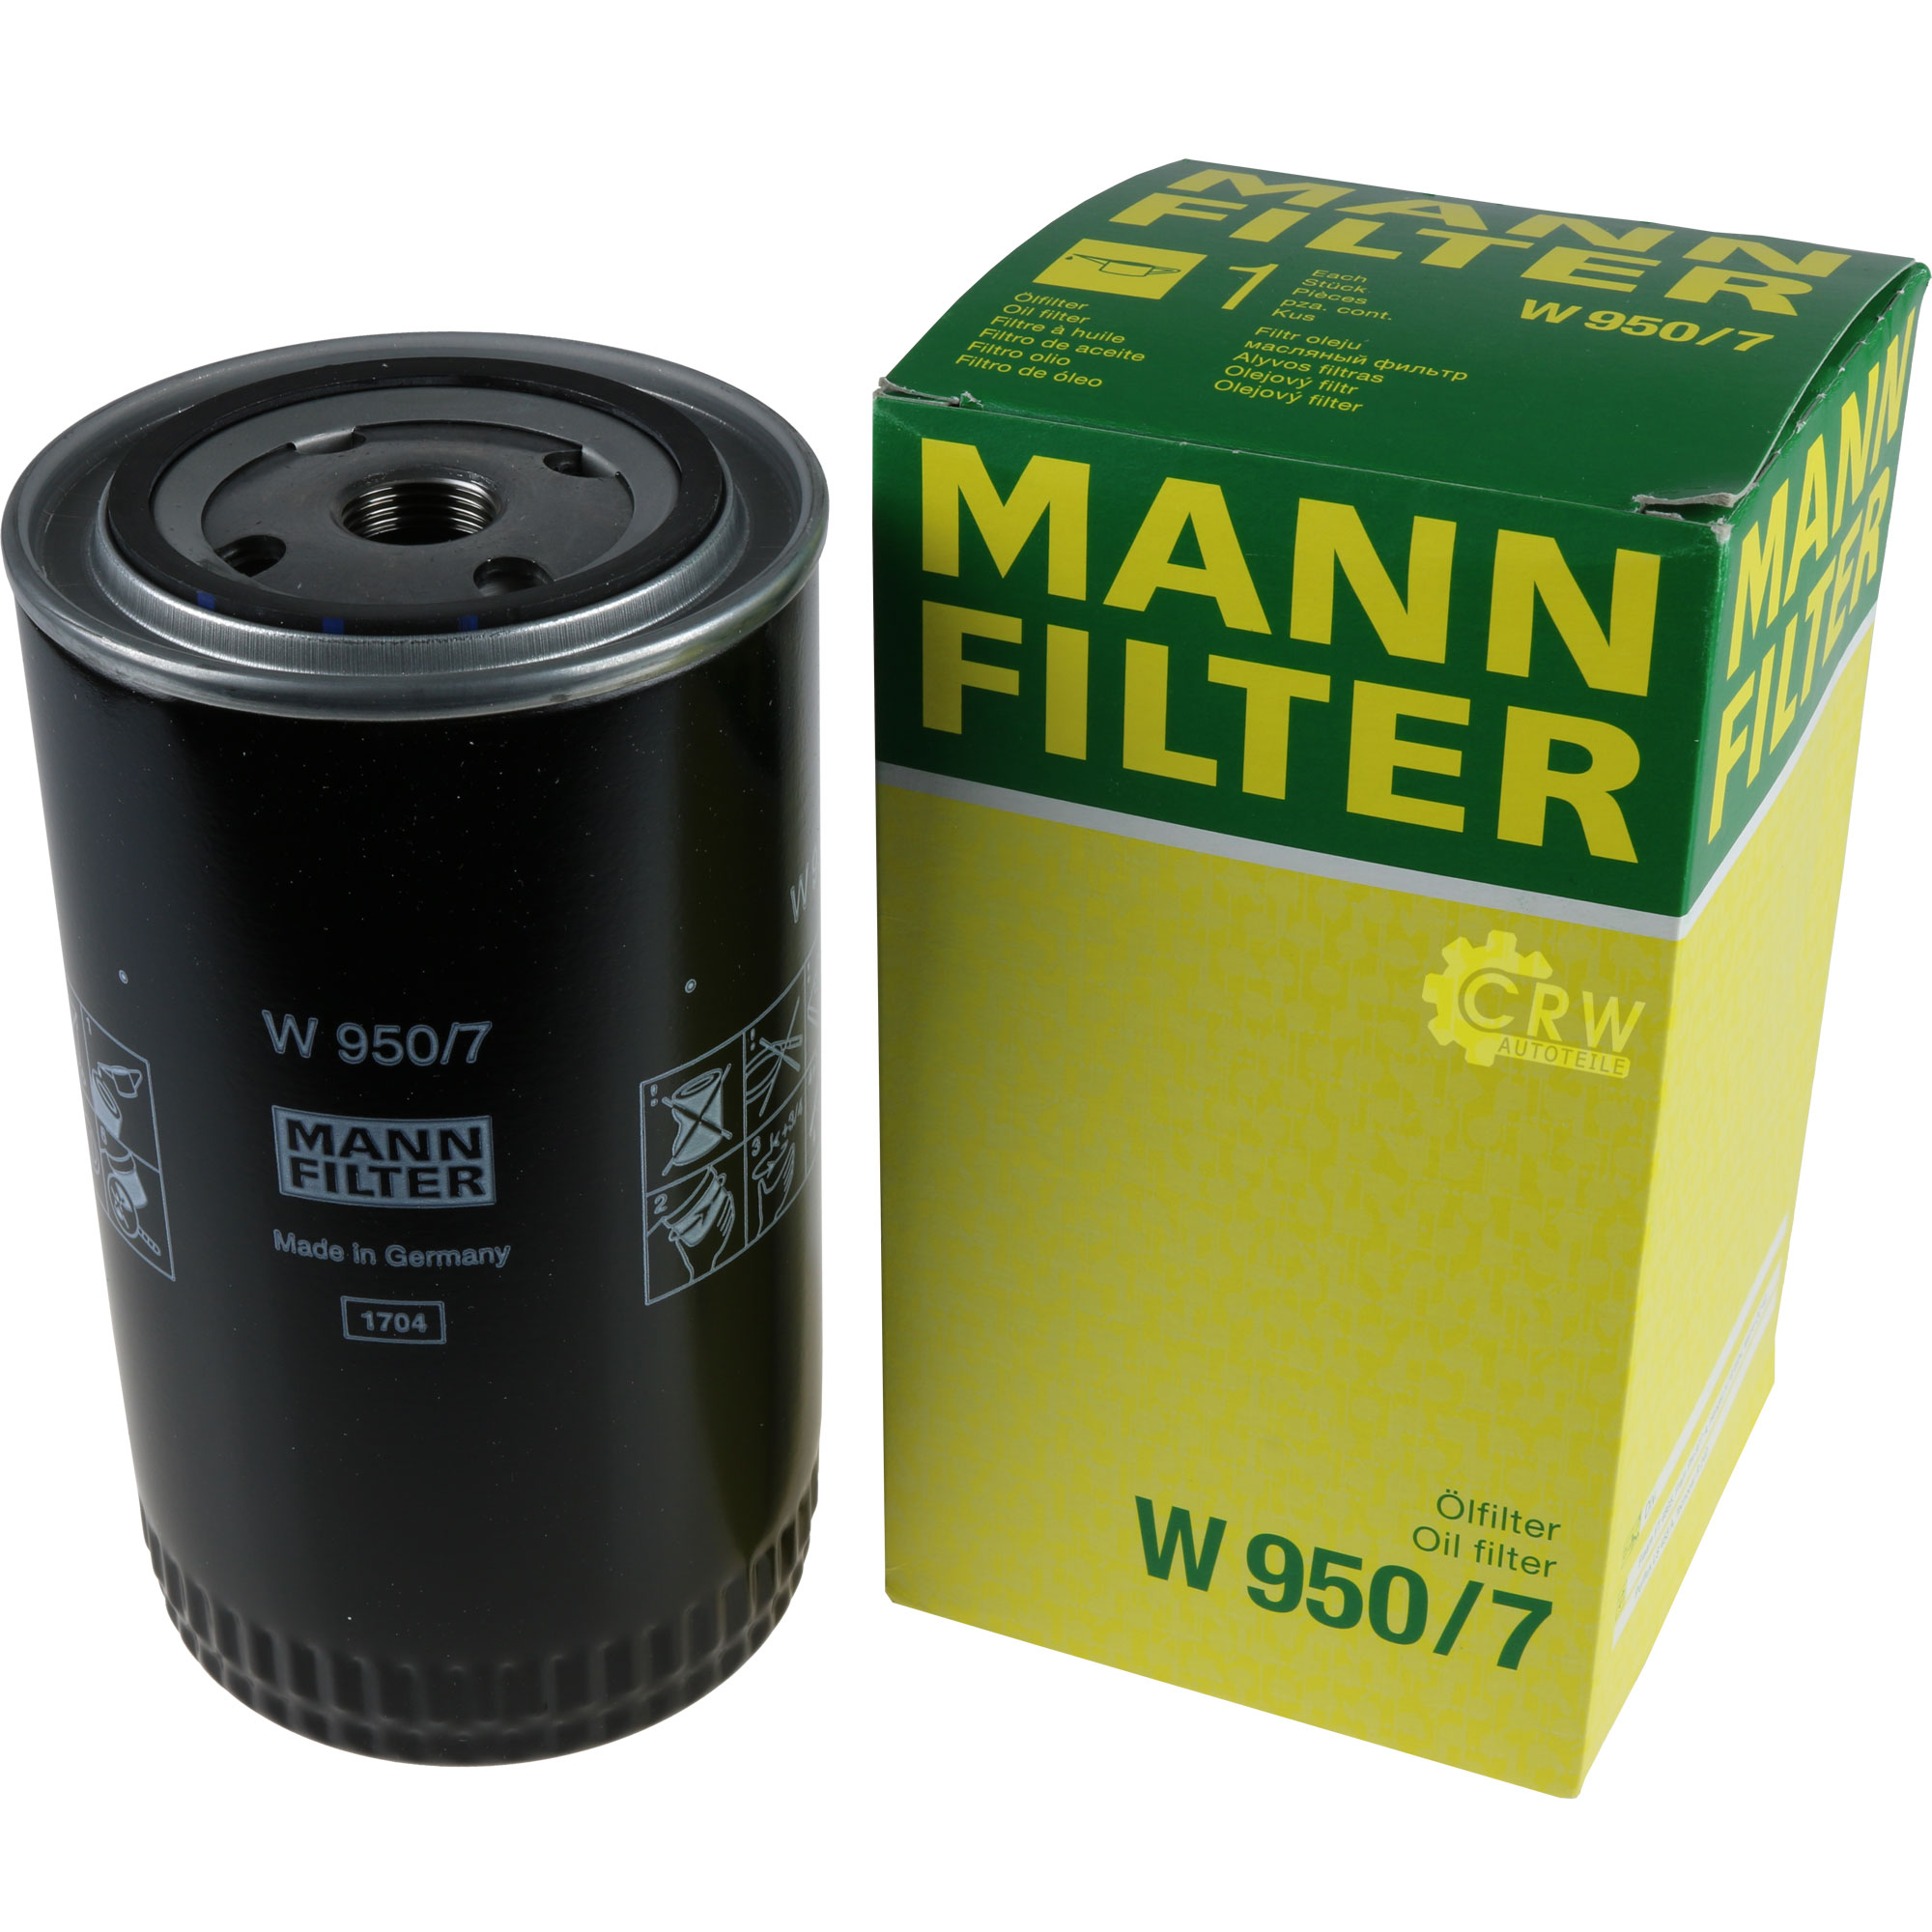 MANN-FILTER ÖlFILTER für Arbeitshydraulik W 950/7